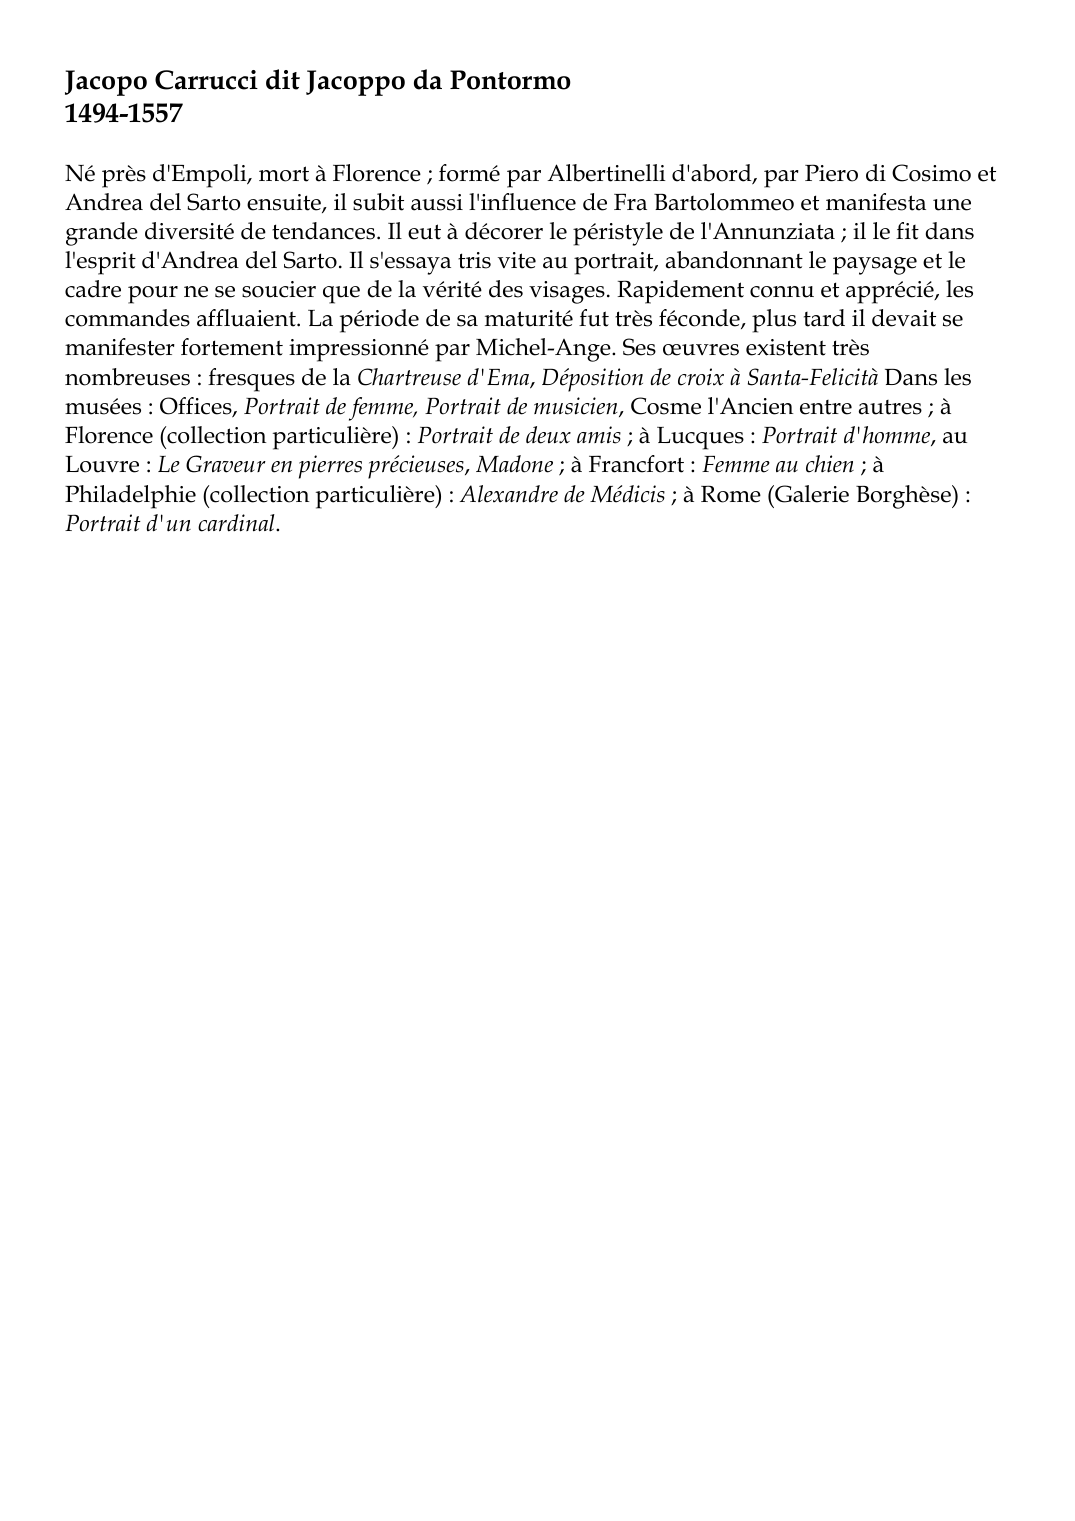 Prévisualisation du document Jacopo Carrucci dit Jacoppo da Pontormo1494-1557Né près d'Empoli, mort à Florence ; formé par Albertinelli d'abord, par Piero di Cosimo etAndrea del Sarto ensuite, il subit aussi l'influence de Fra Bartolommeo et manifesta unegrande diversité de tendances.